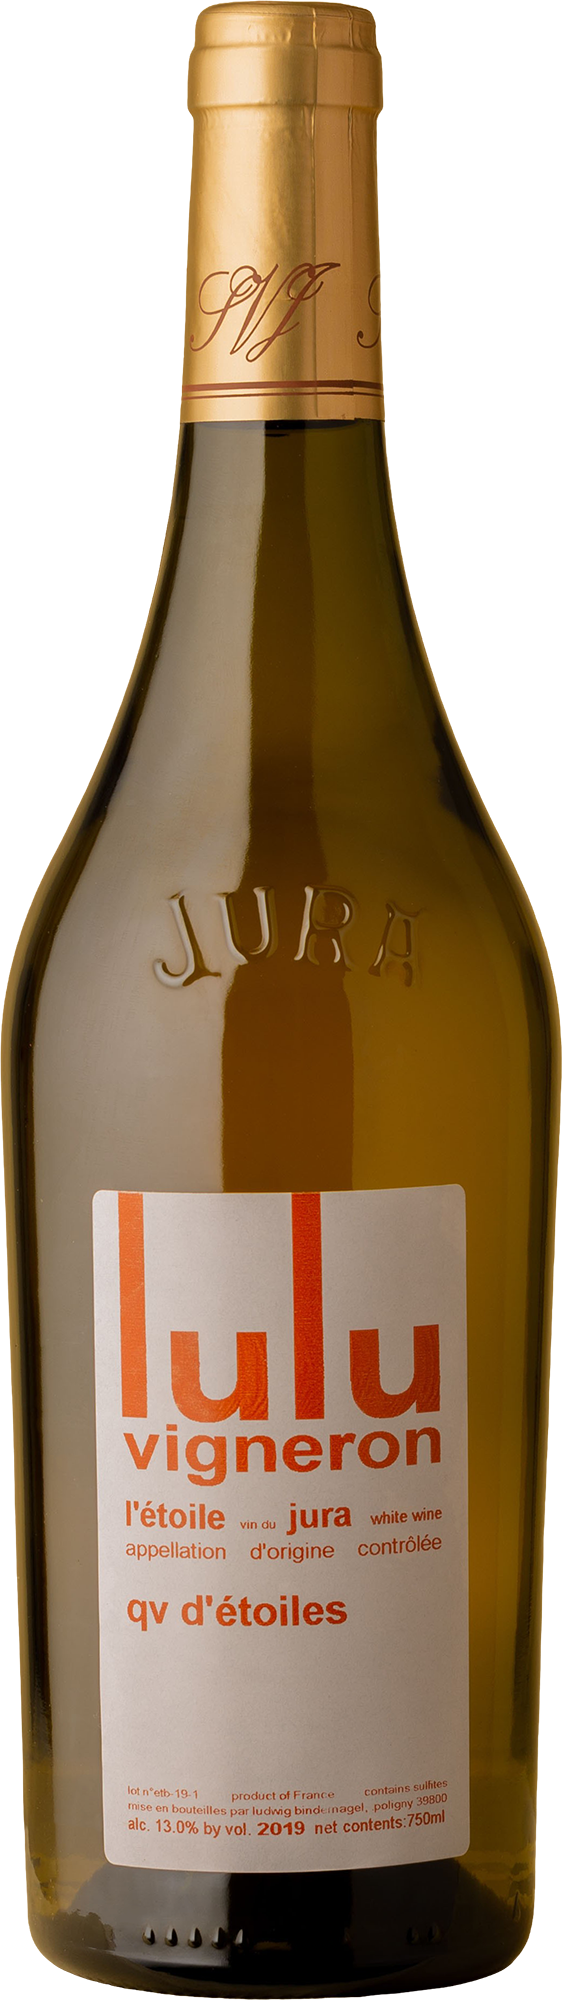 Lulu Vigneron - Etoile au Levant Chardonnay 2019 White Wine